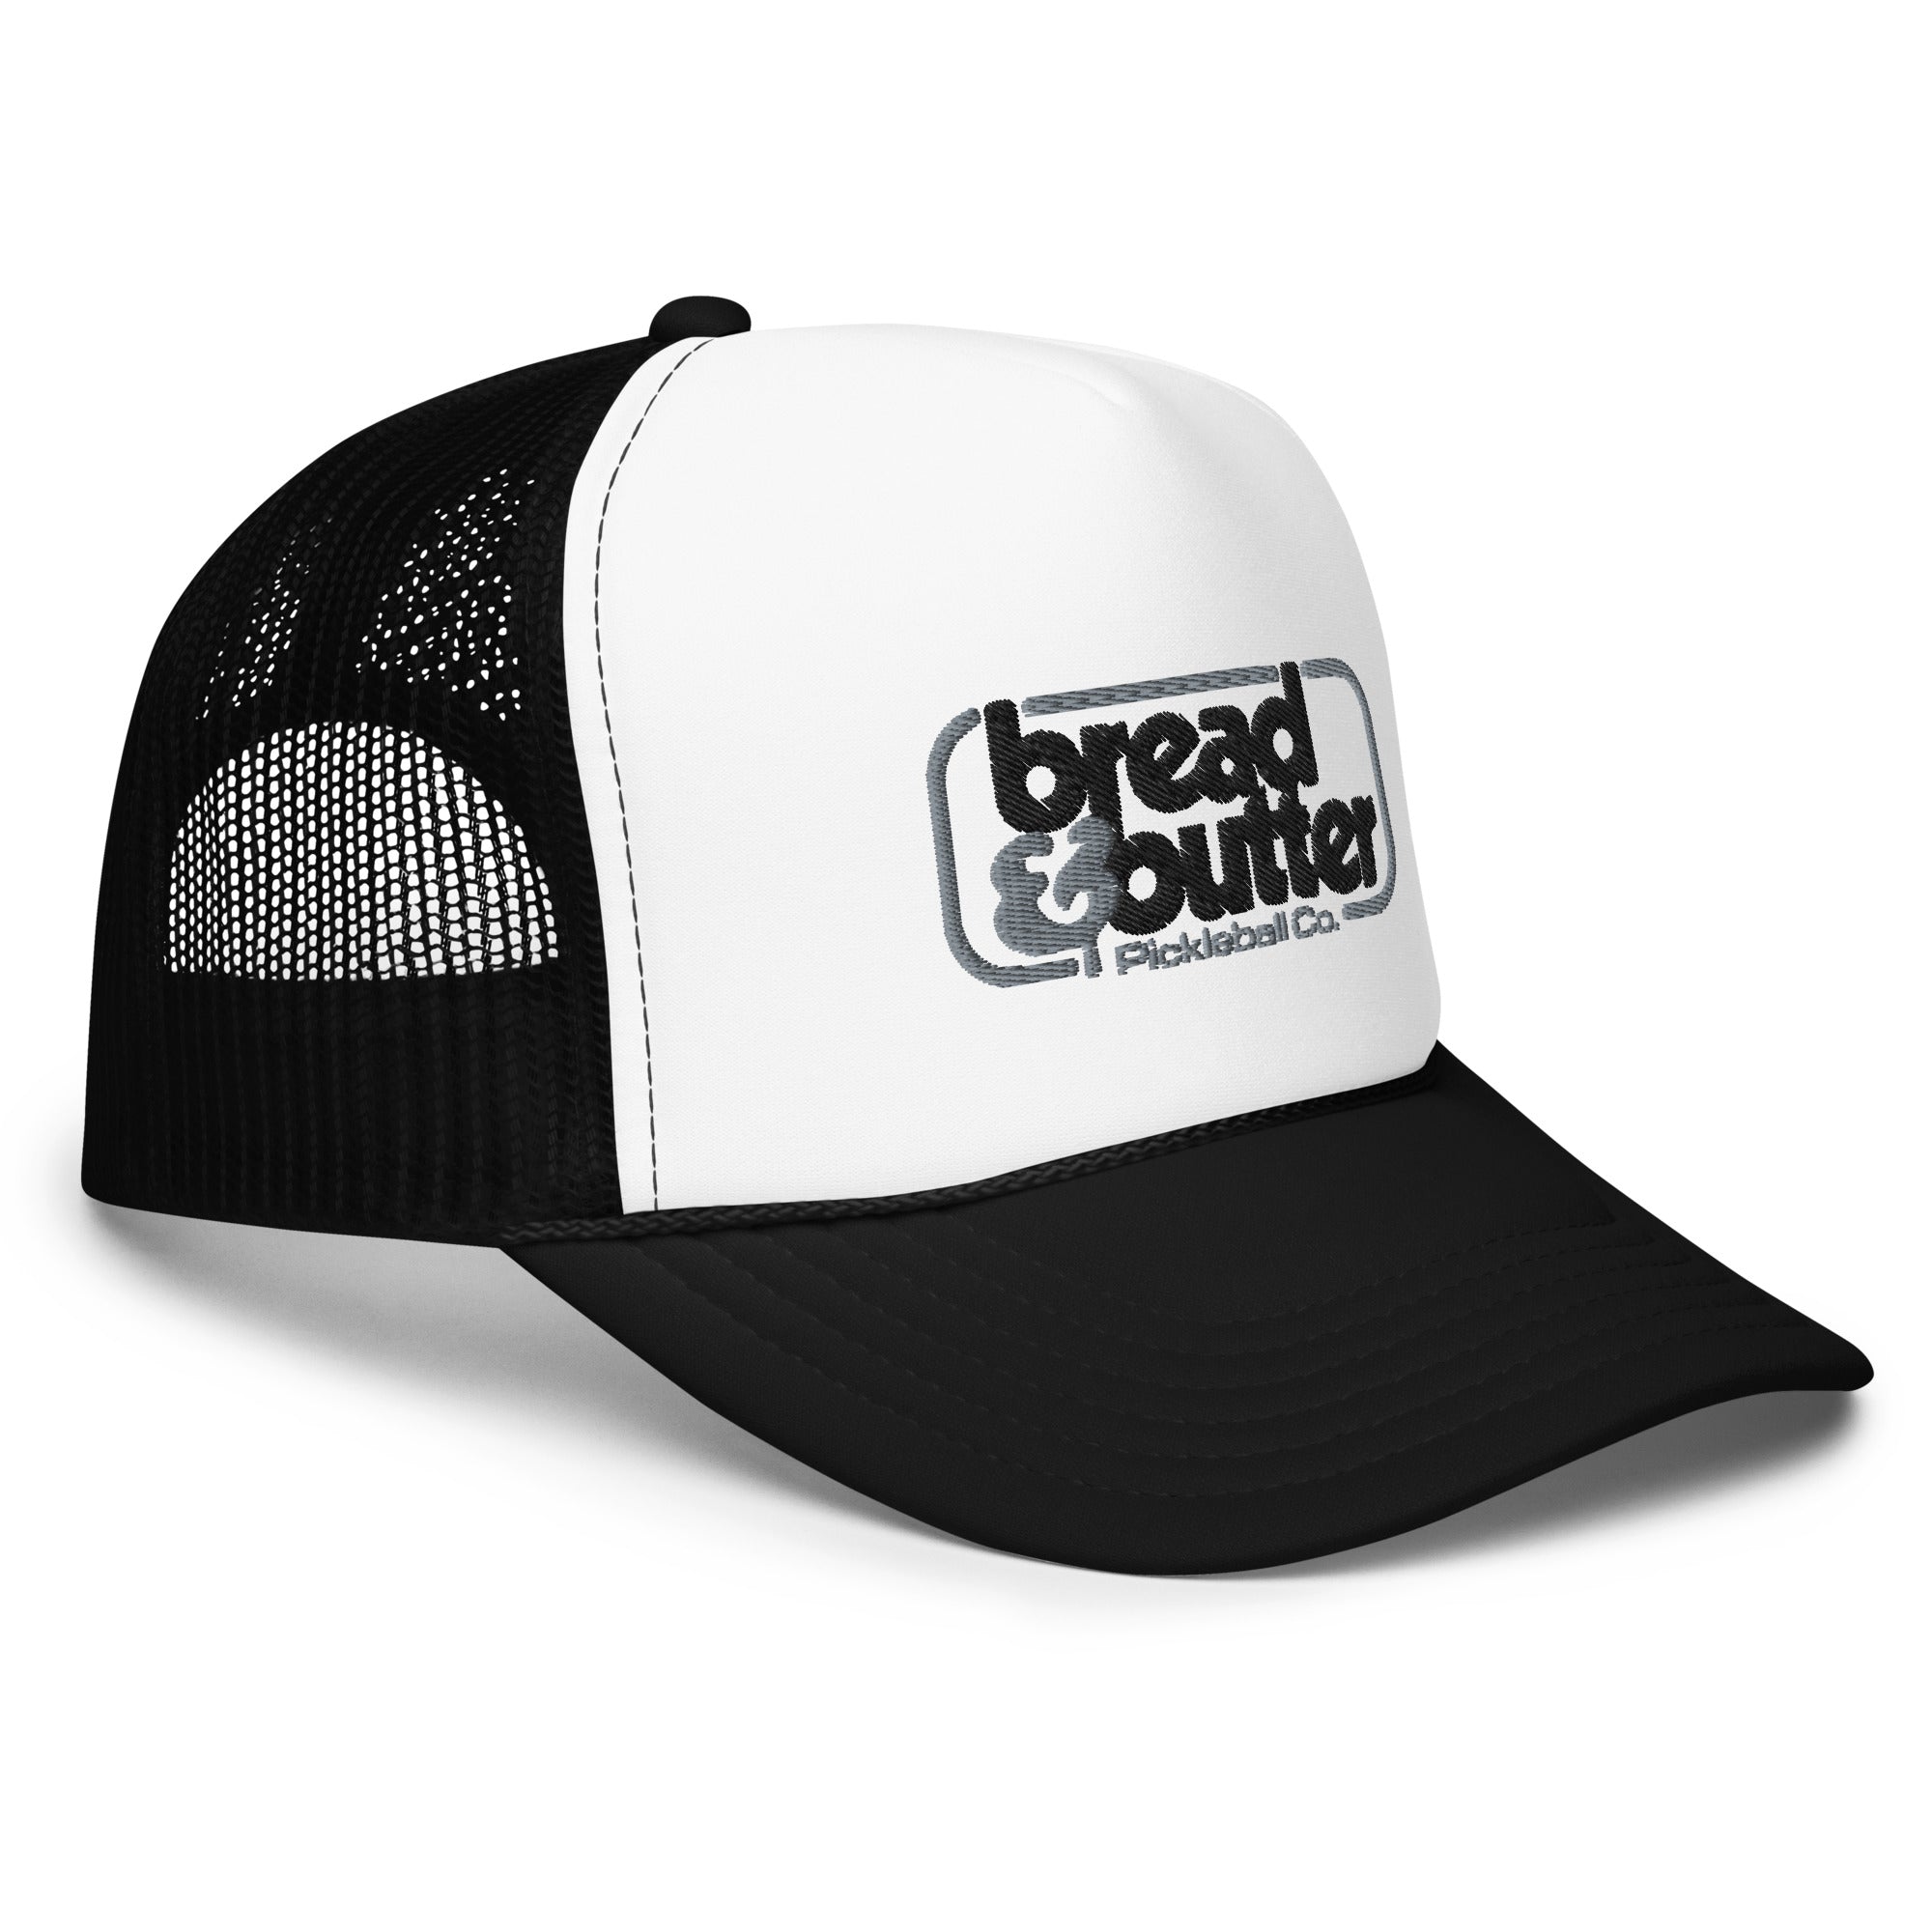 Ace Foam Trucker Hat B/W – Bread & Butter Pickleball Company